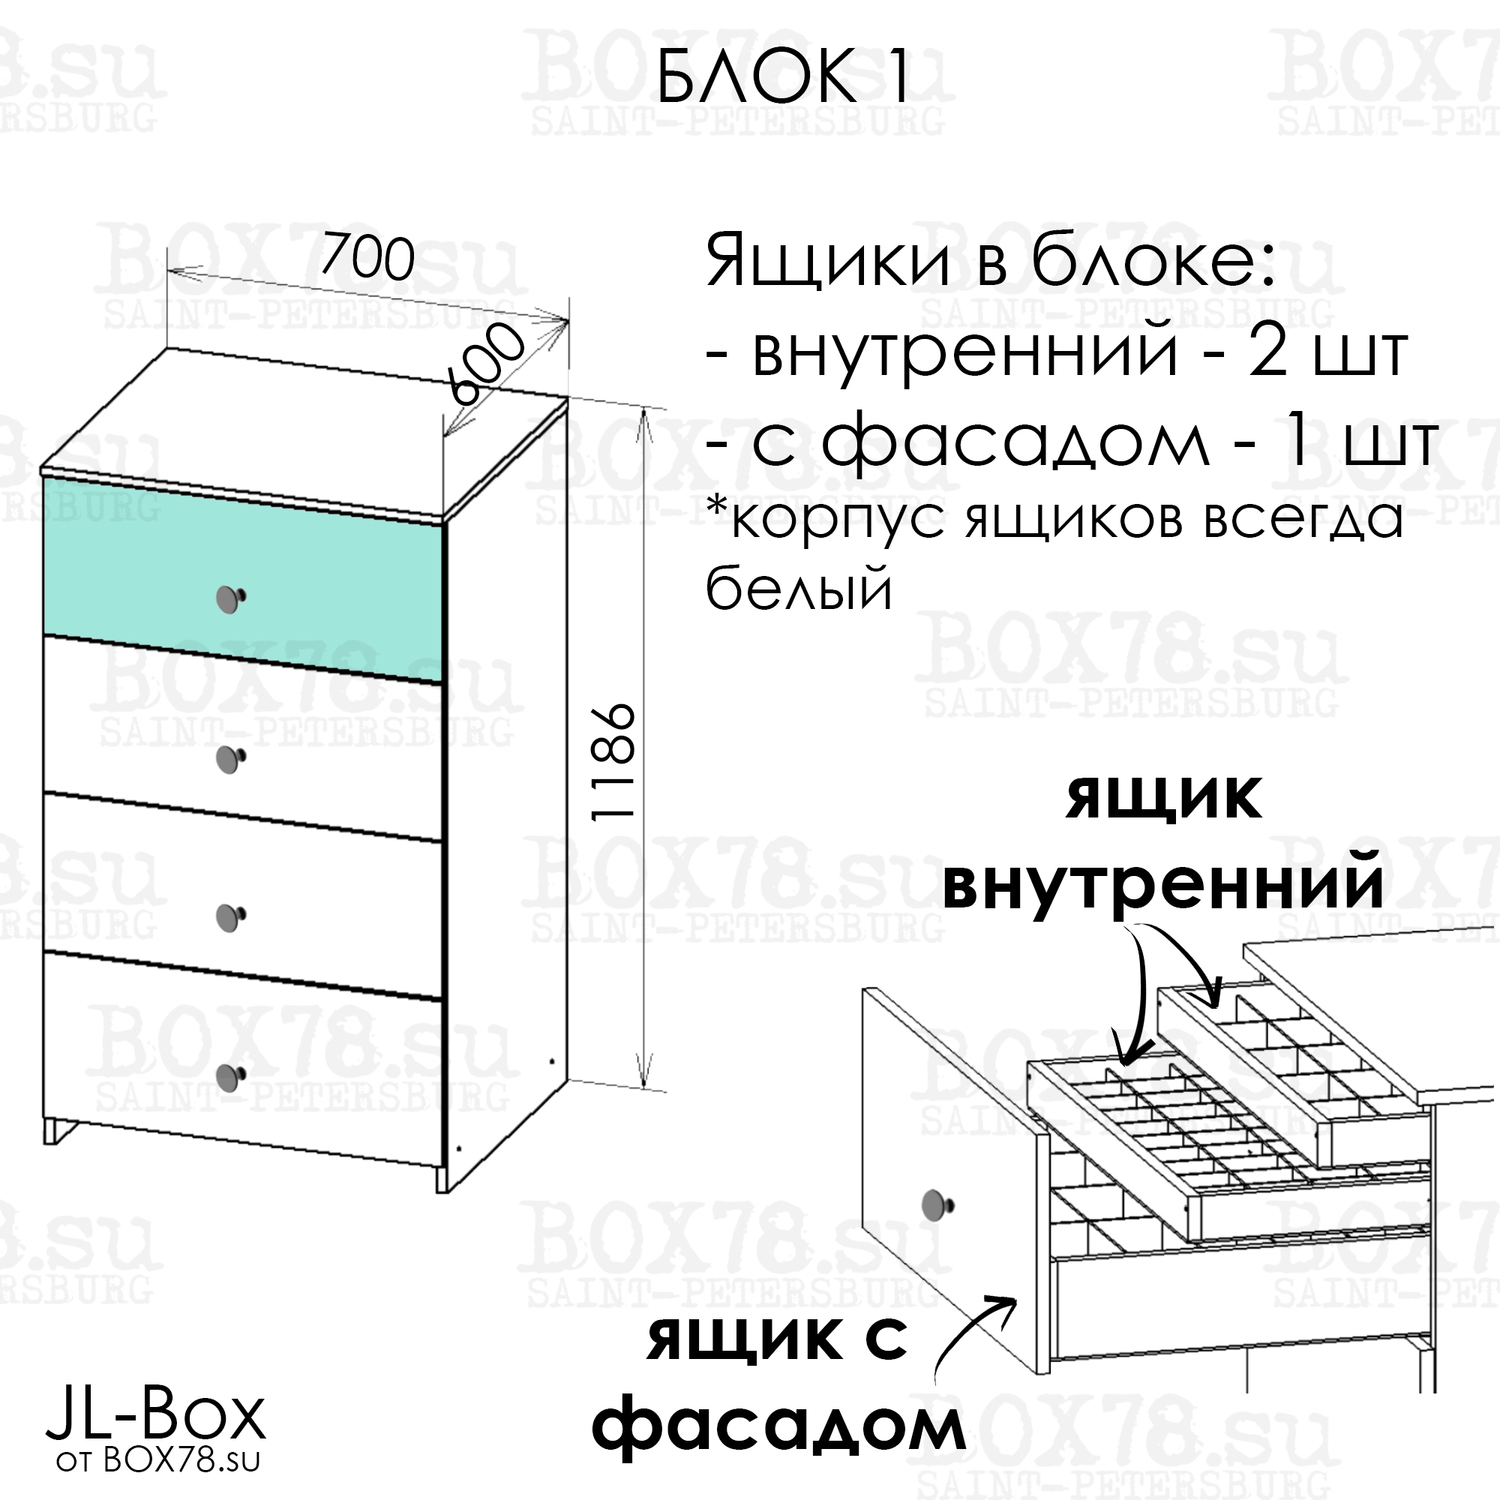 JL-Box. Блок 1